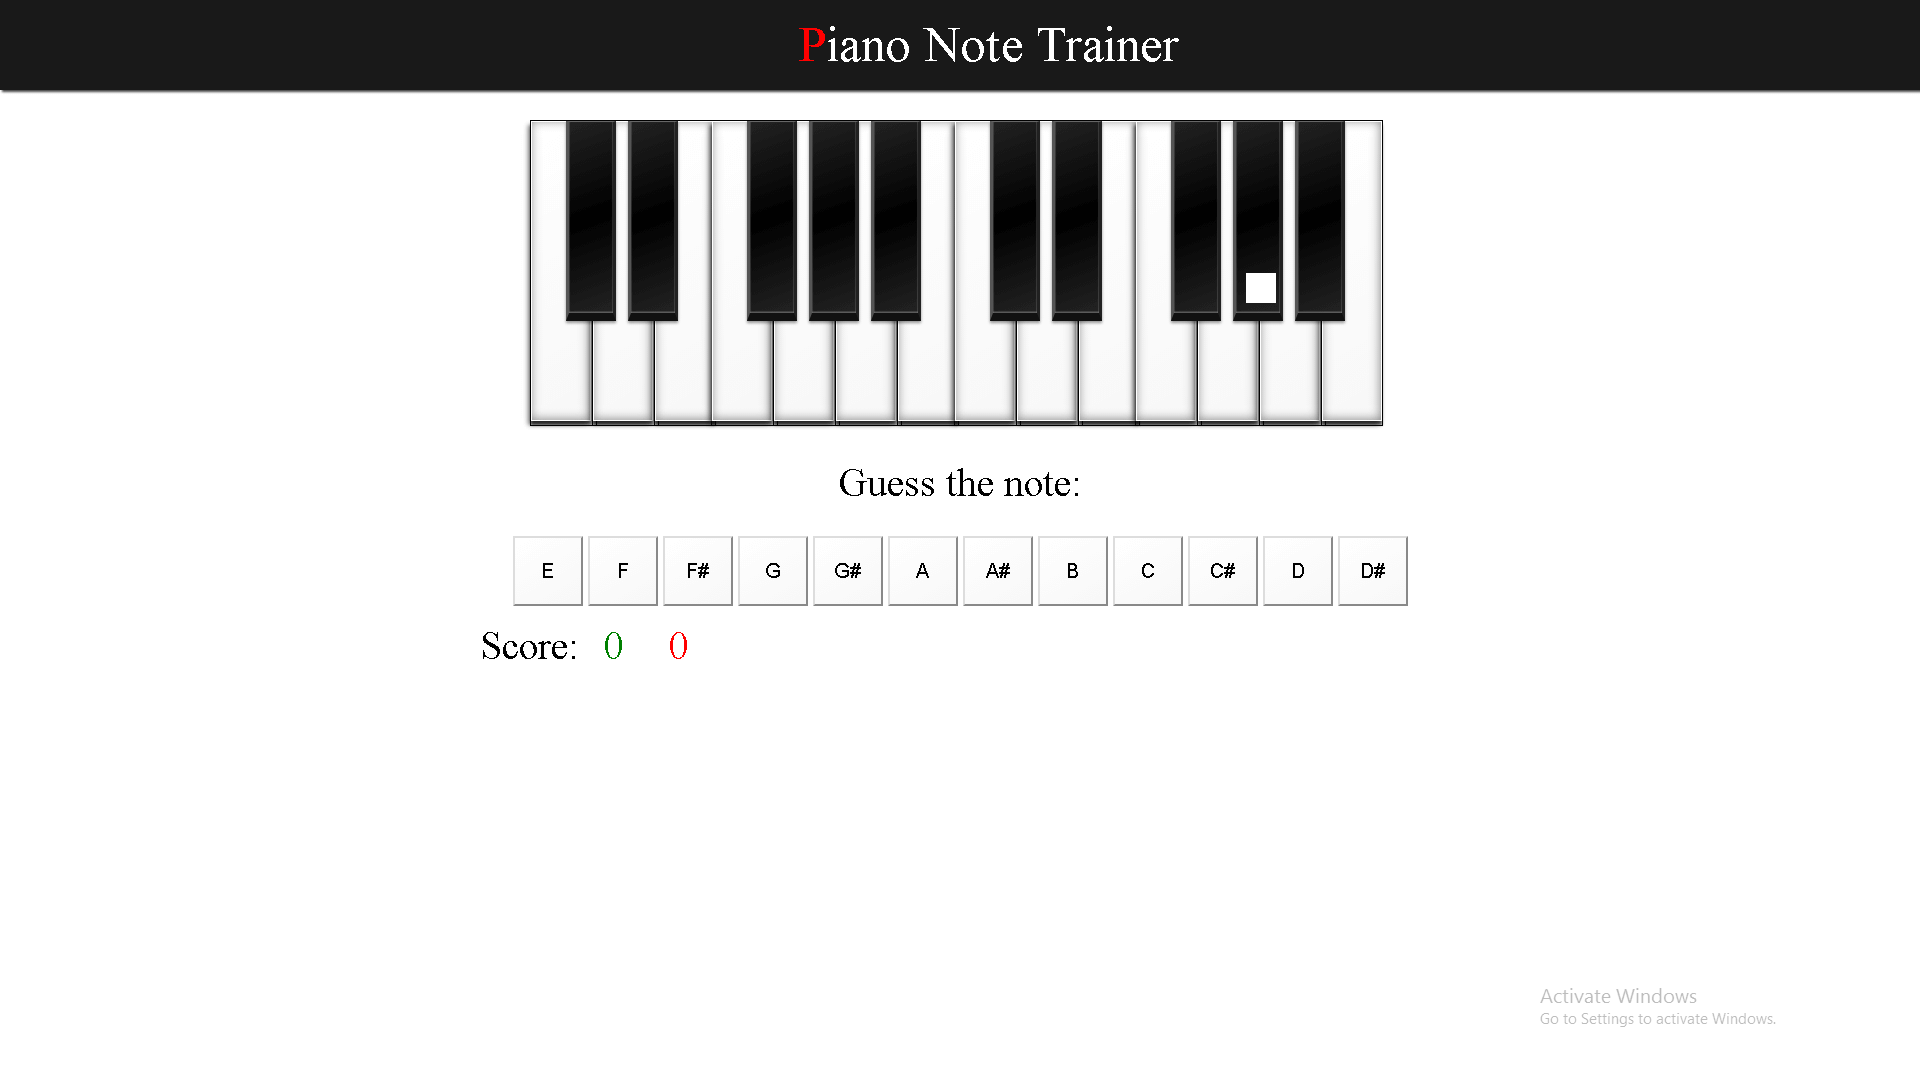 piano-trainer